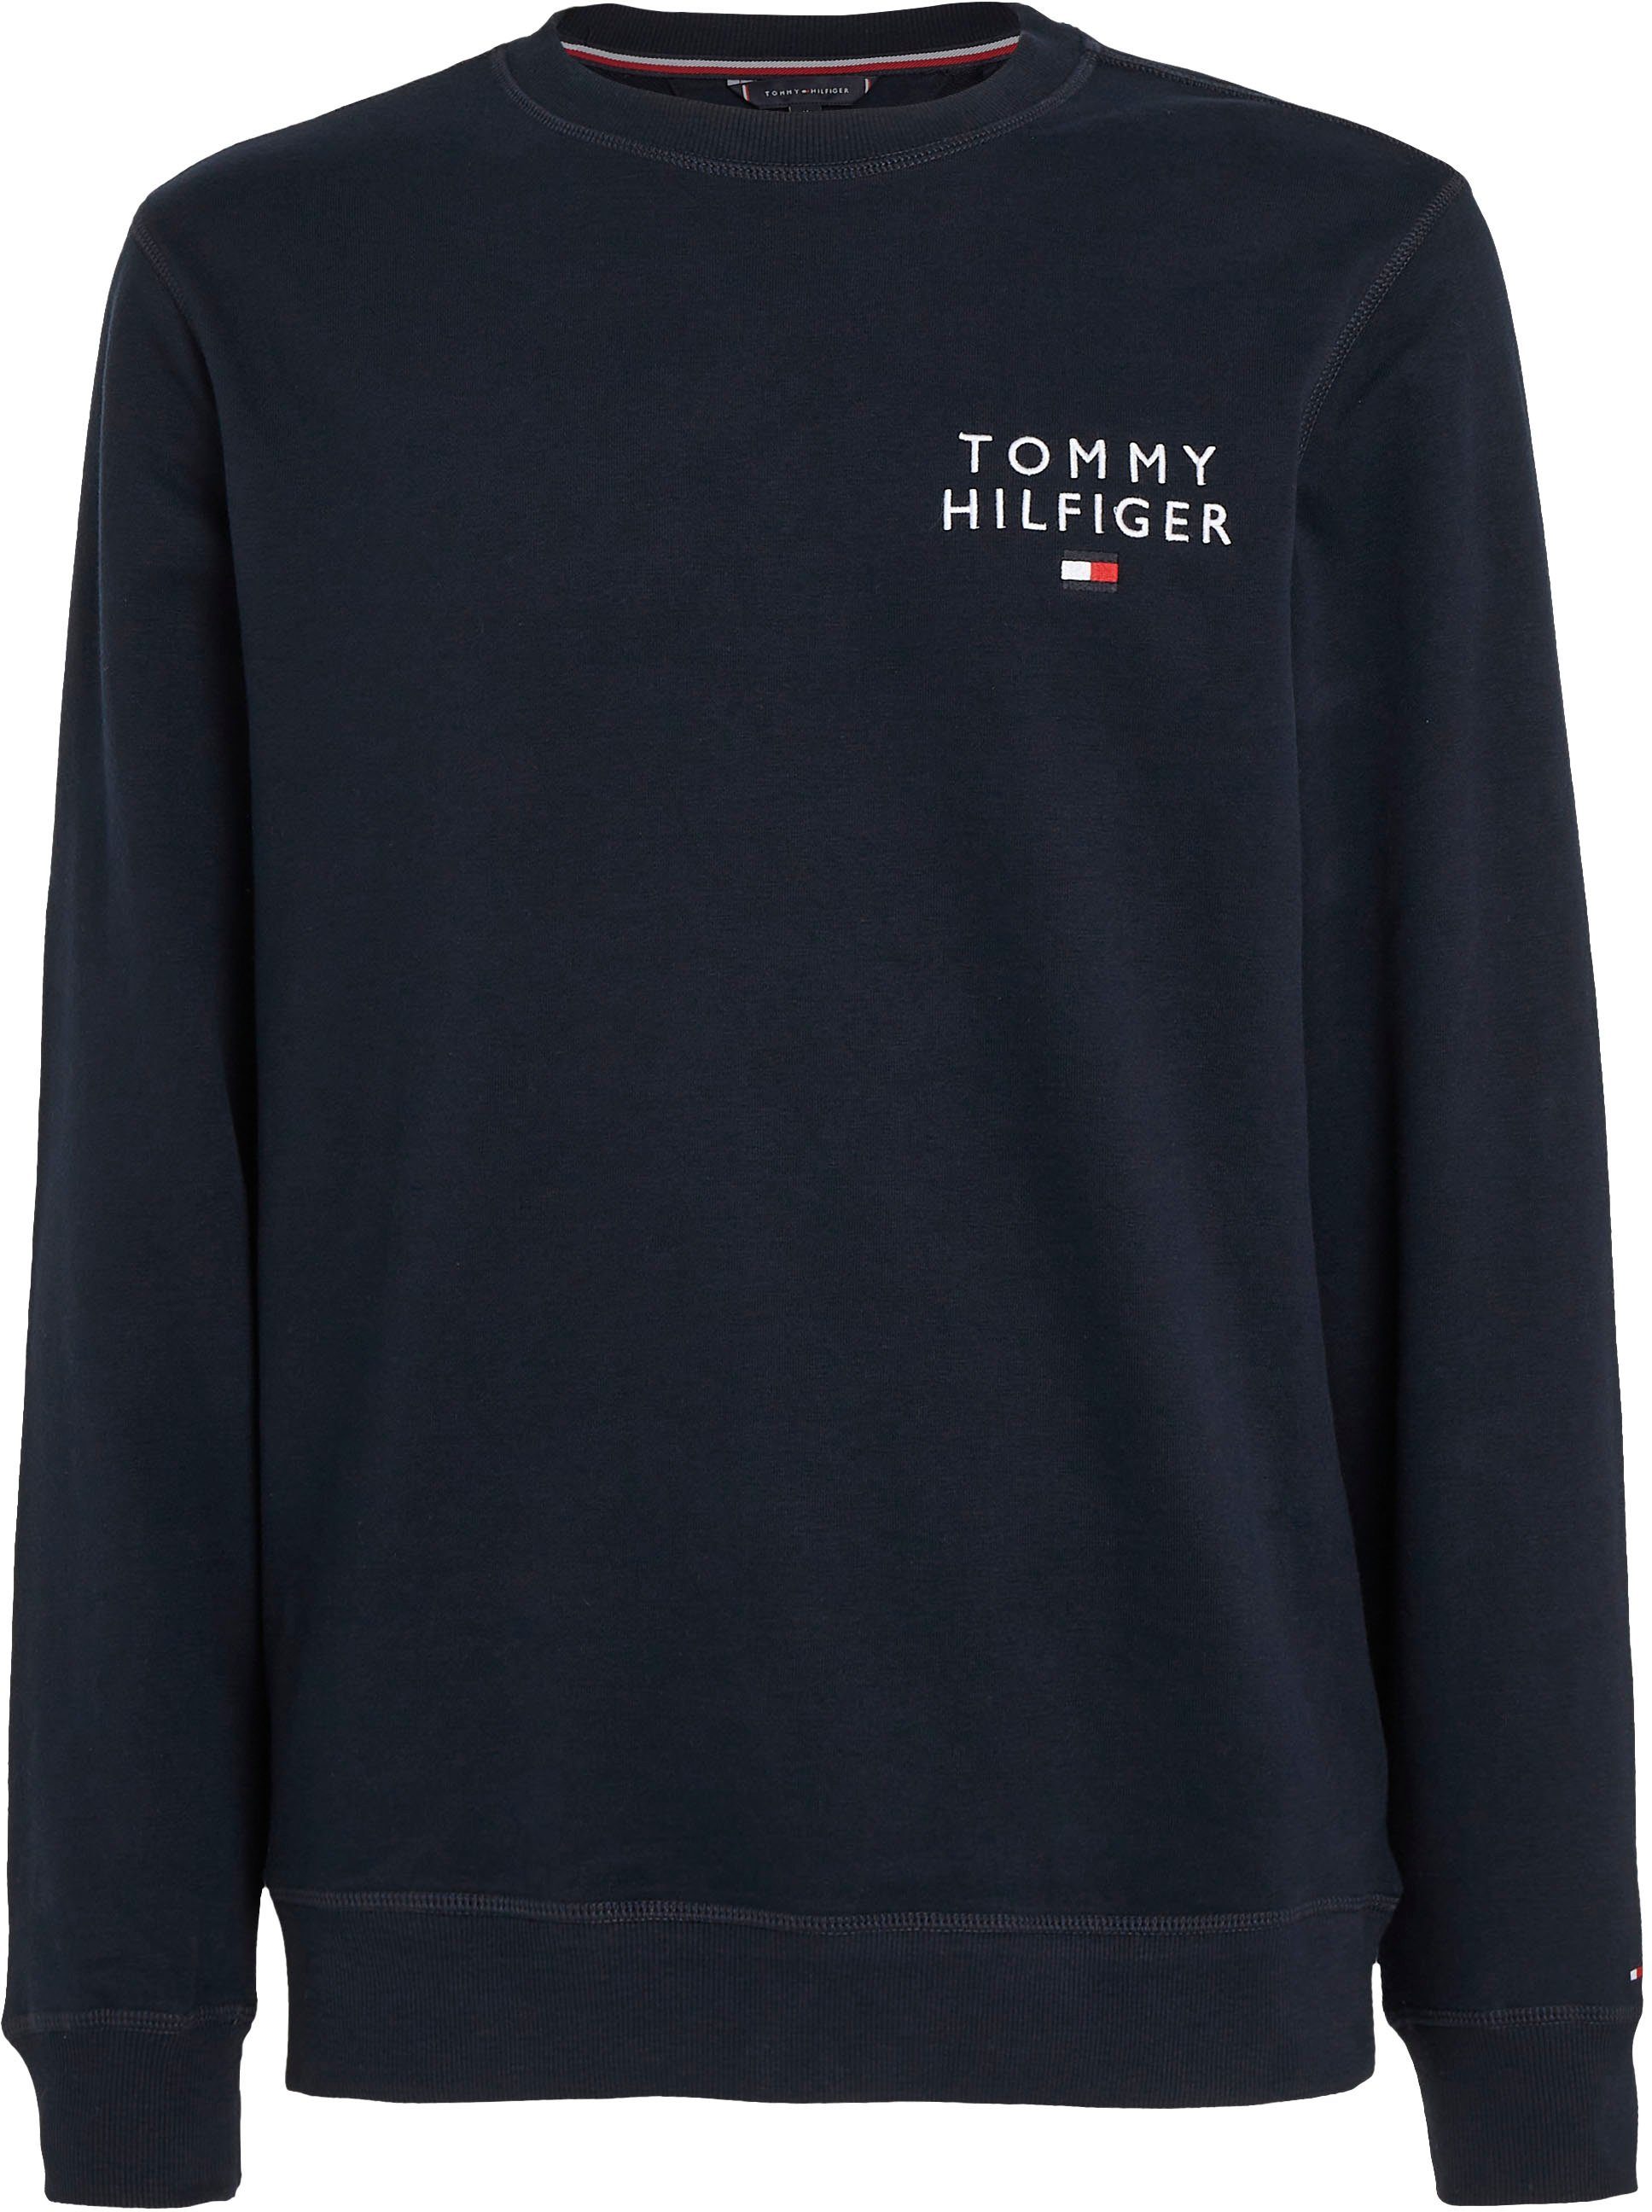 Tommy Hilfiger Markenlabel Sweatshirt Tommy TOP Underwear Hilfiger HWK mit TRACK dunkelblau